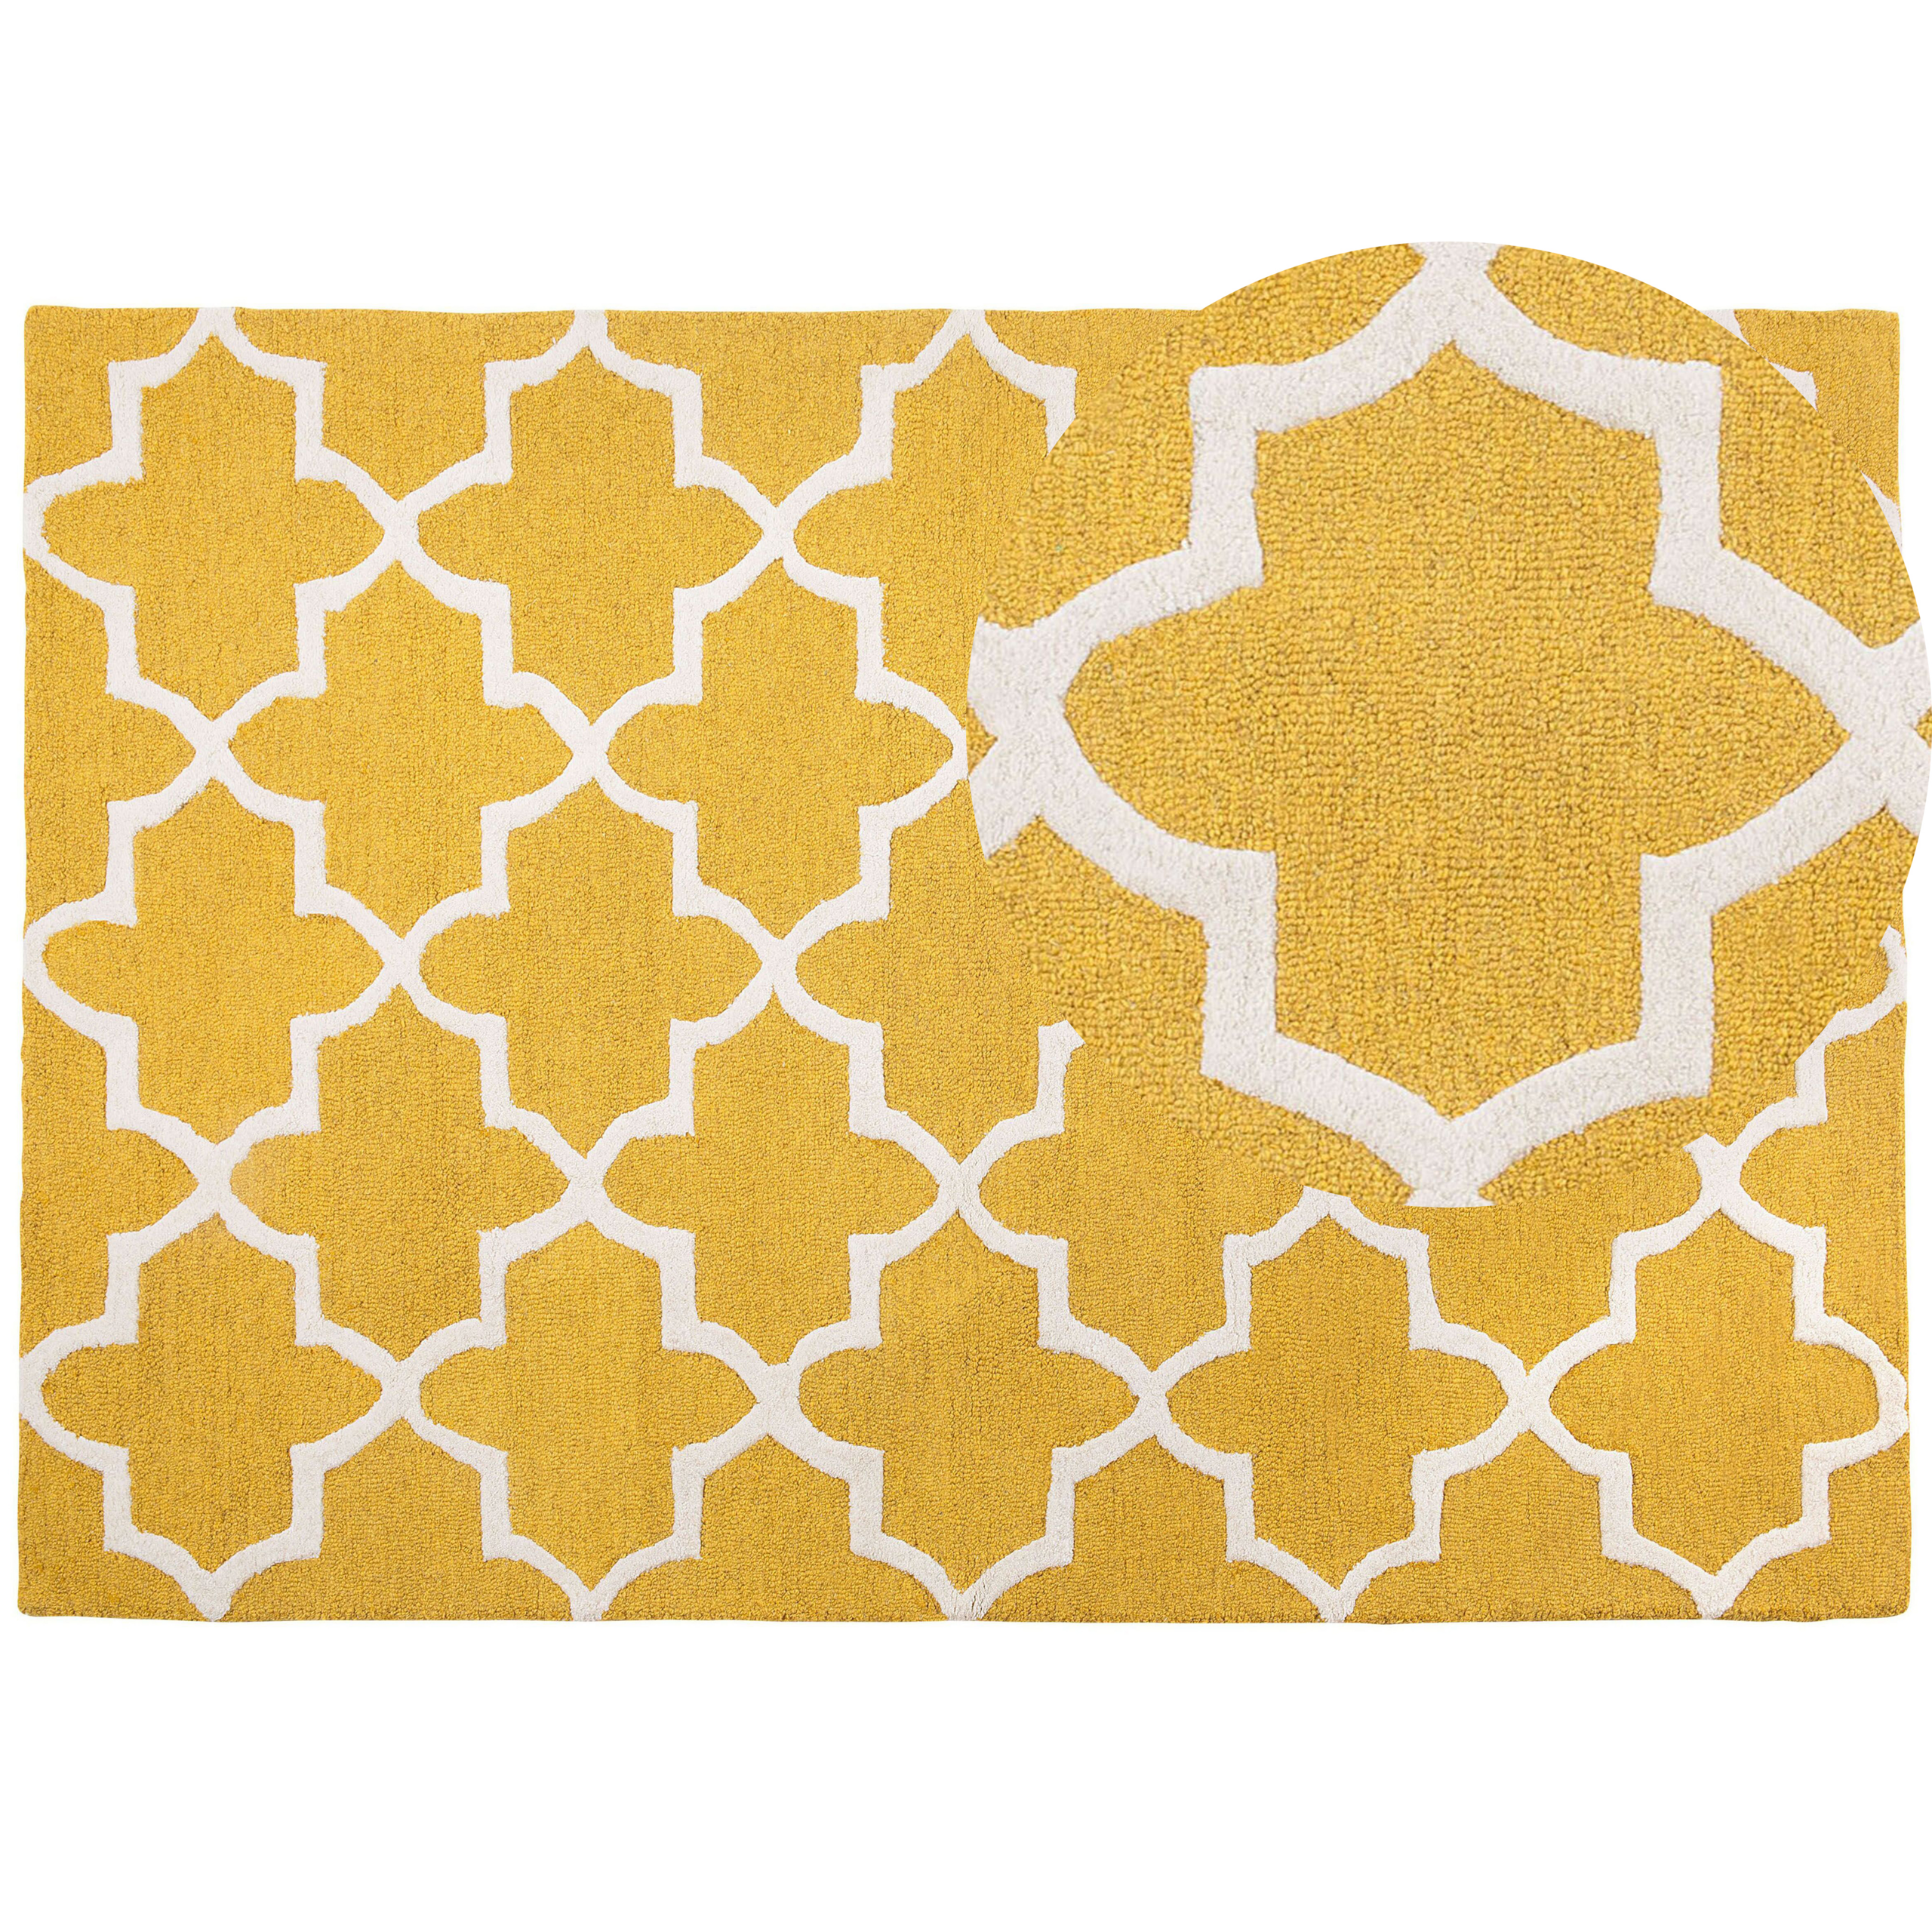 Beliani Tapete amarelo de lã e algodão 160 x 230 cm feito à mão padrão geométrico estilo moderno